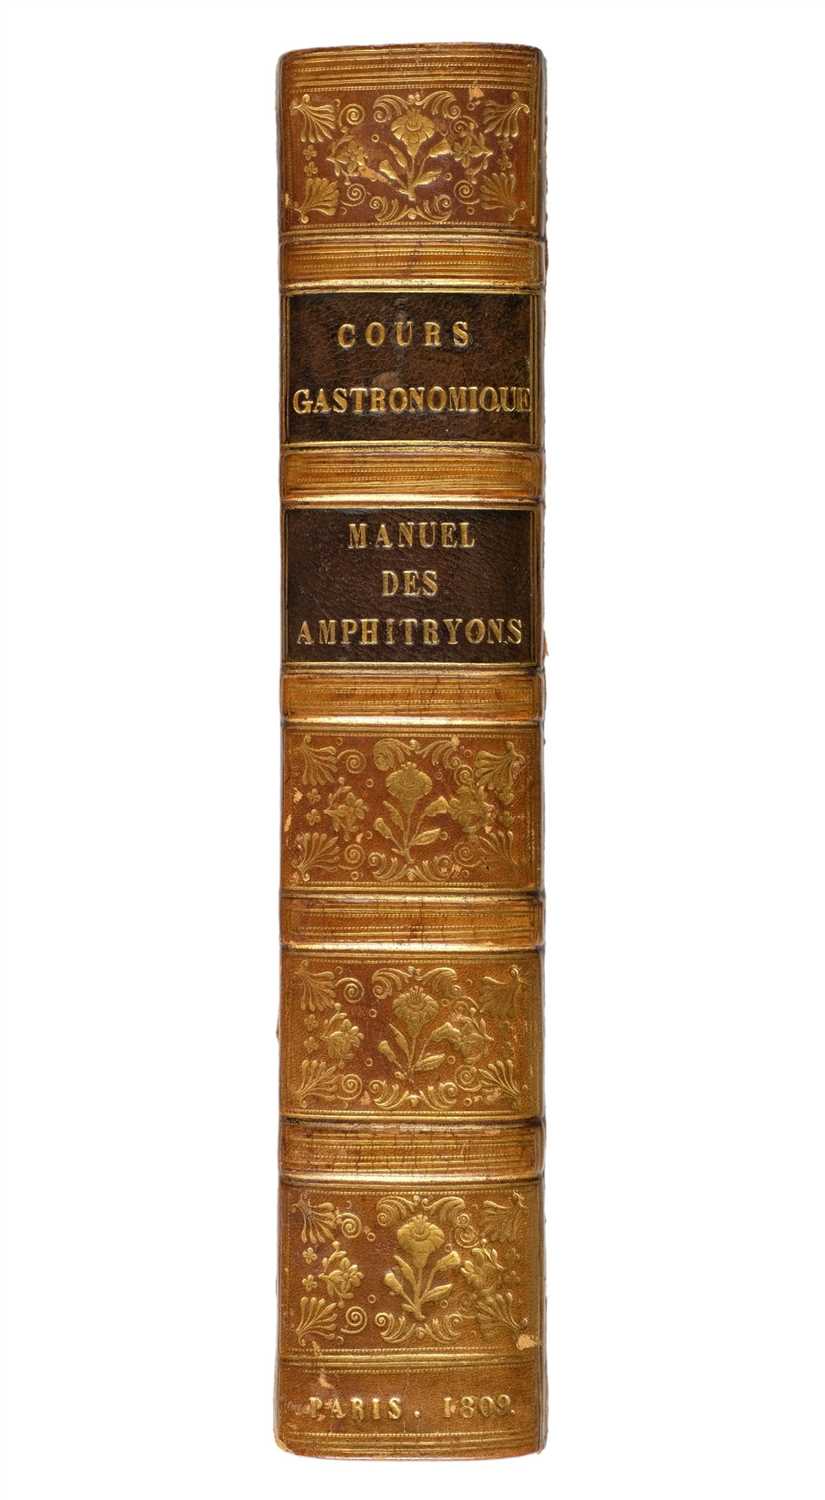 Lot 344 - Cadet de Gassicourt (Charles L.). Cours gastronomique, ou les diners de Manant-ville, Paris, 1809